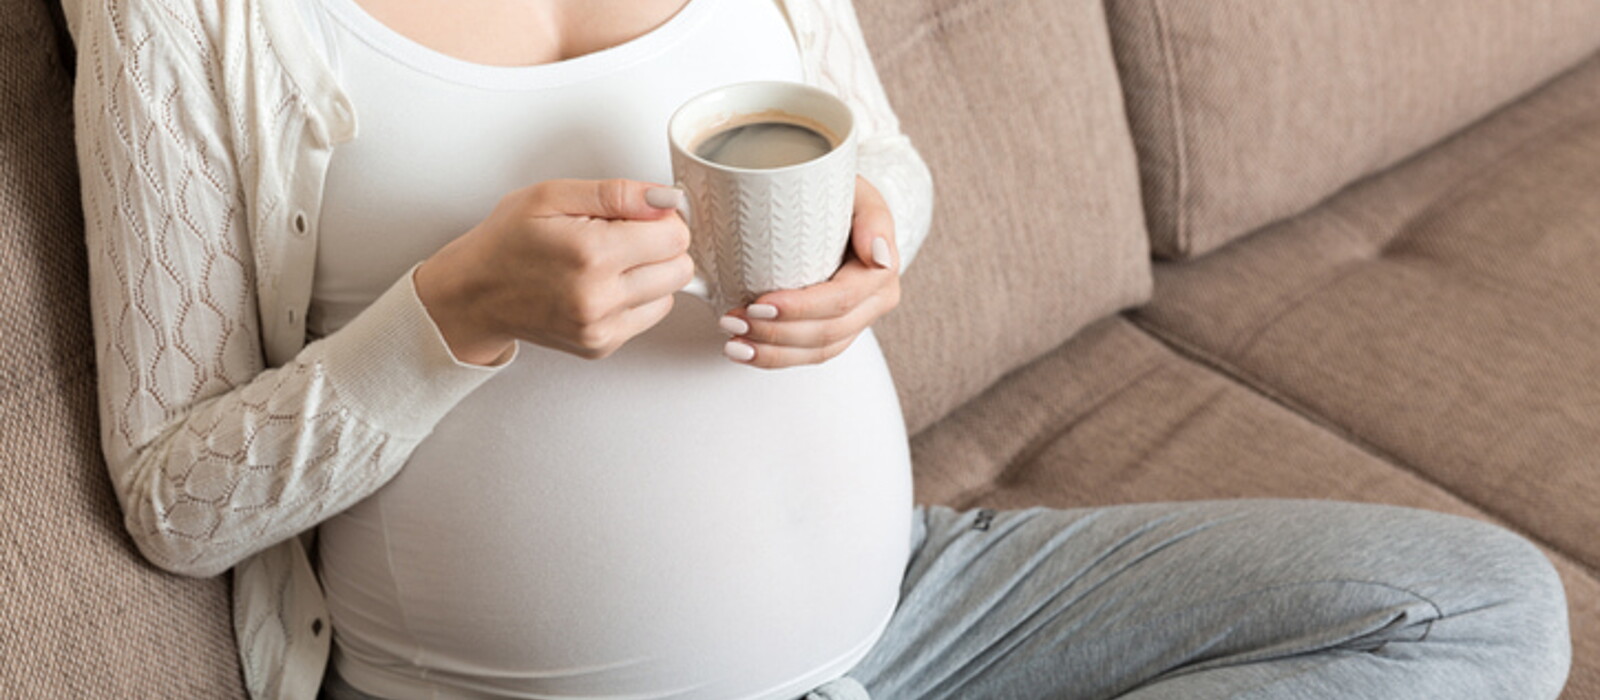 คนท้องกินกาแฟได้ไหม ตั้งครรภ์แต่ติดกาแฟอันตรายหรือไม่ ทำอย่างไรดี